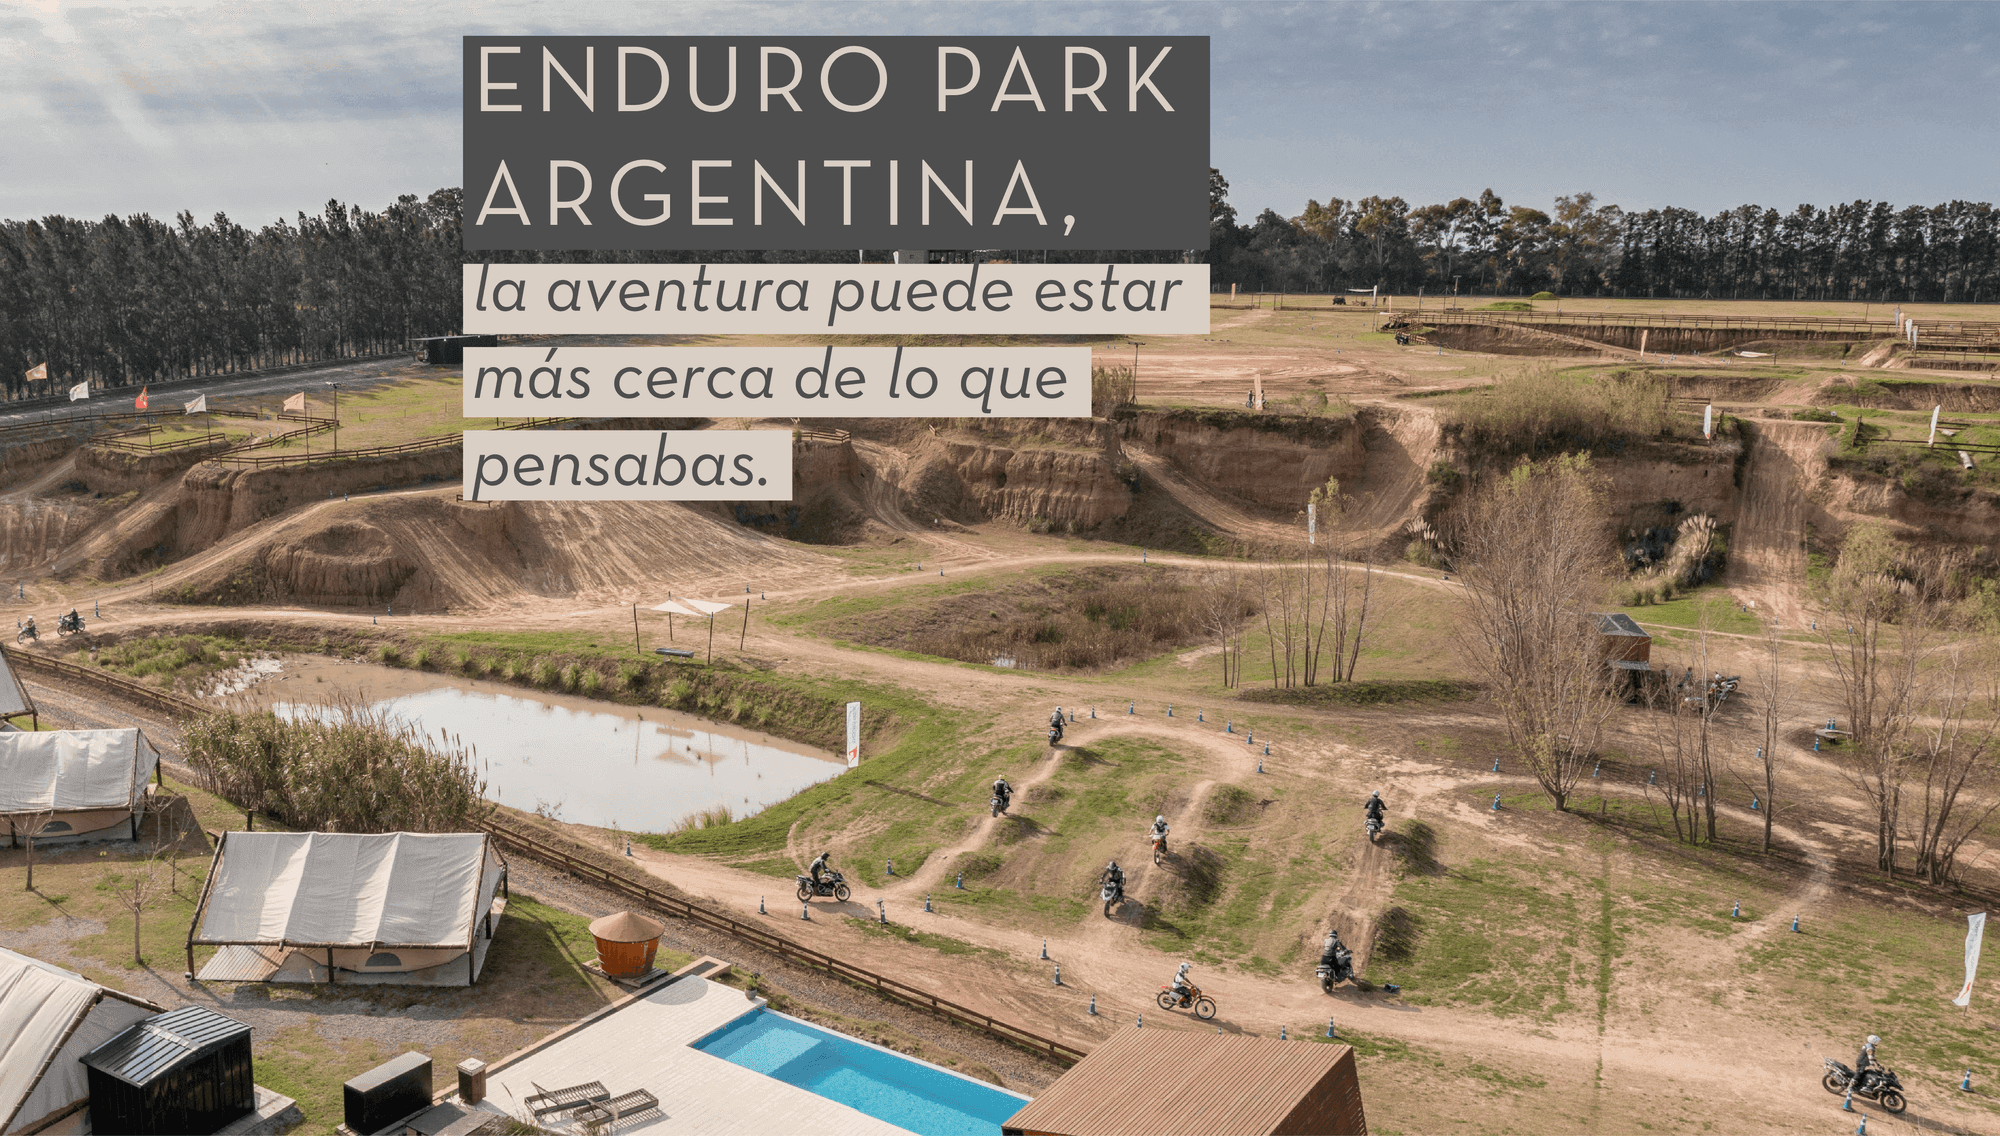 Enduro Park Argentina, la aventura puede estar más cerca de lo que pensabas